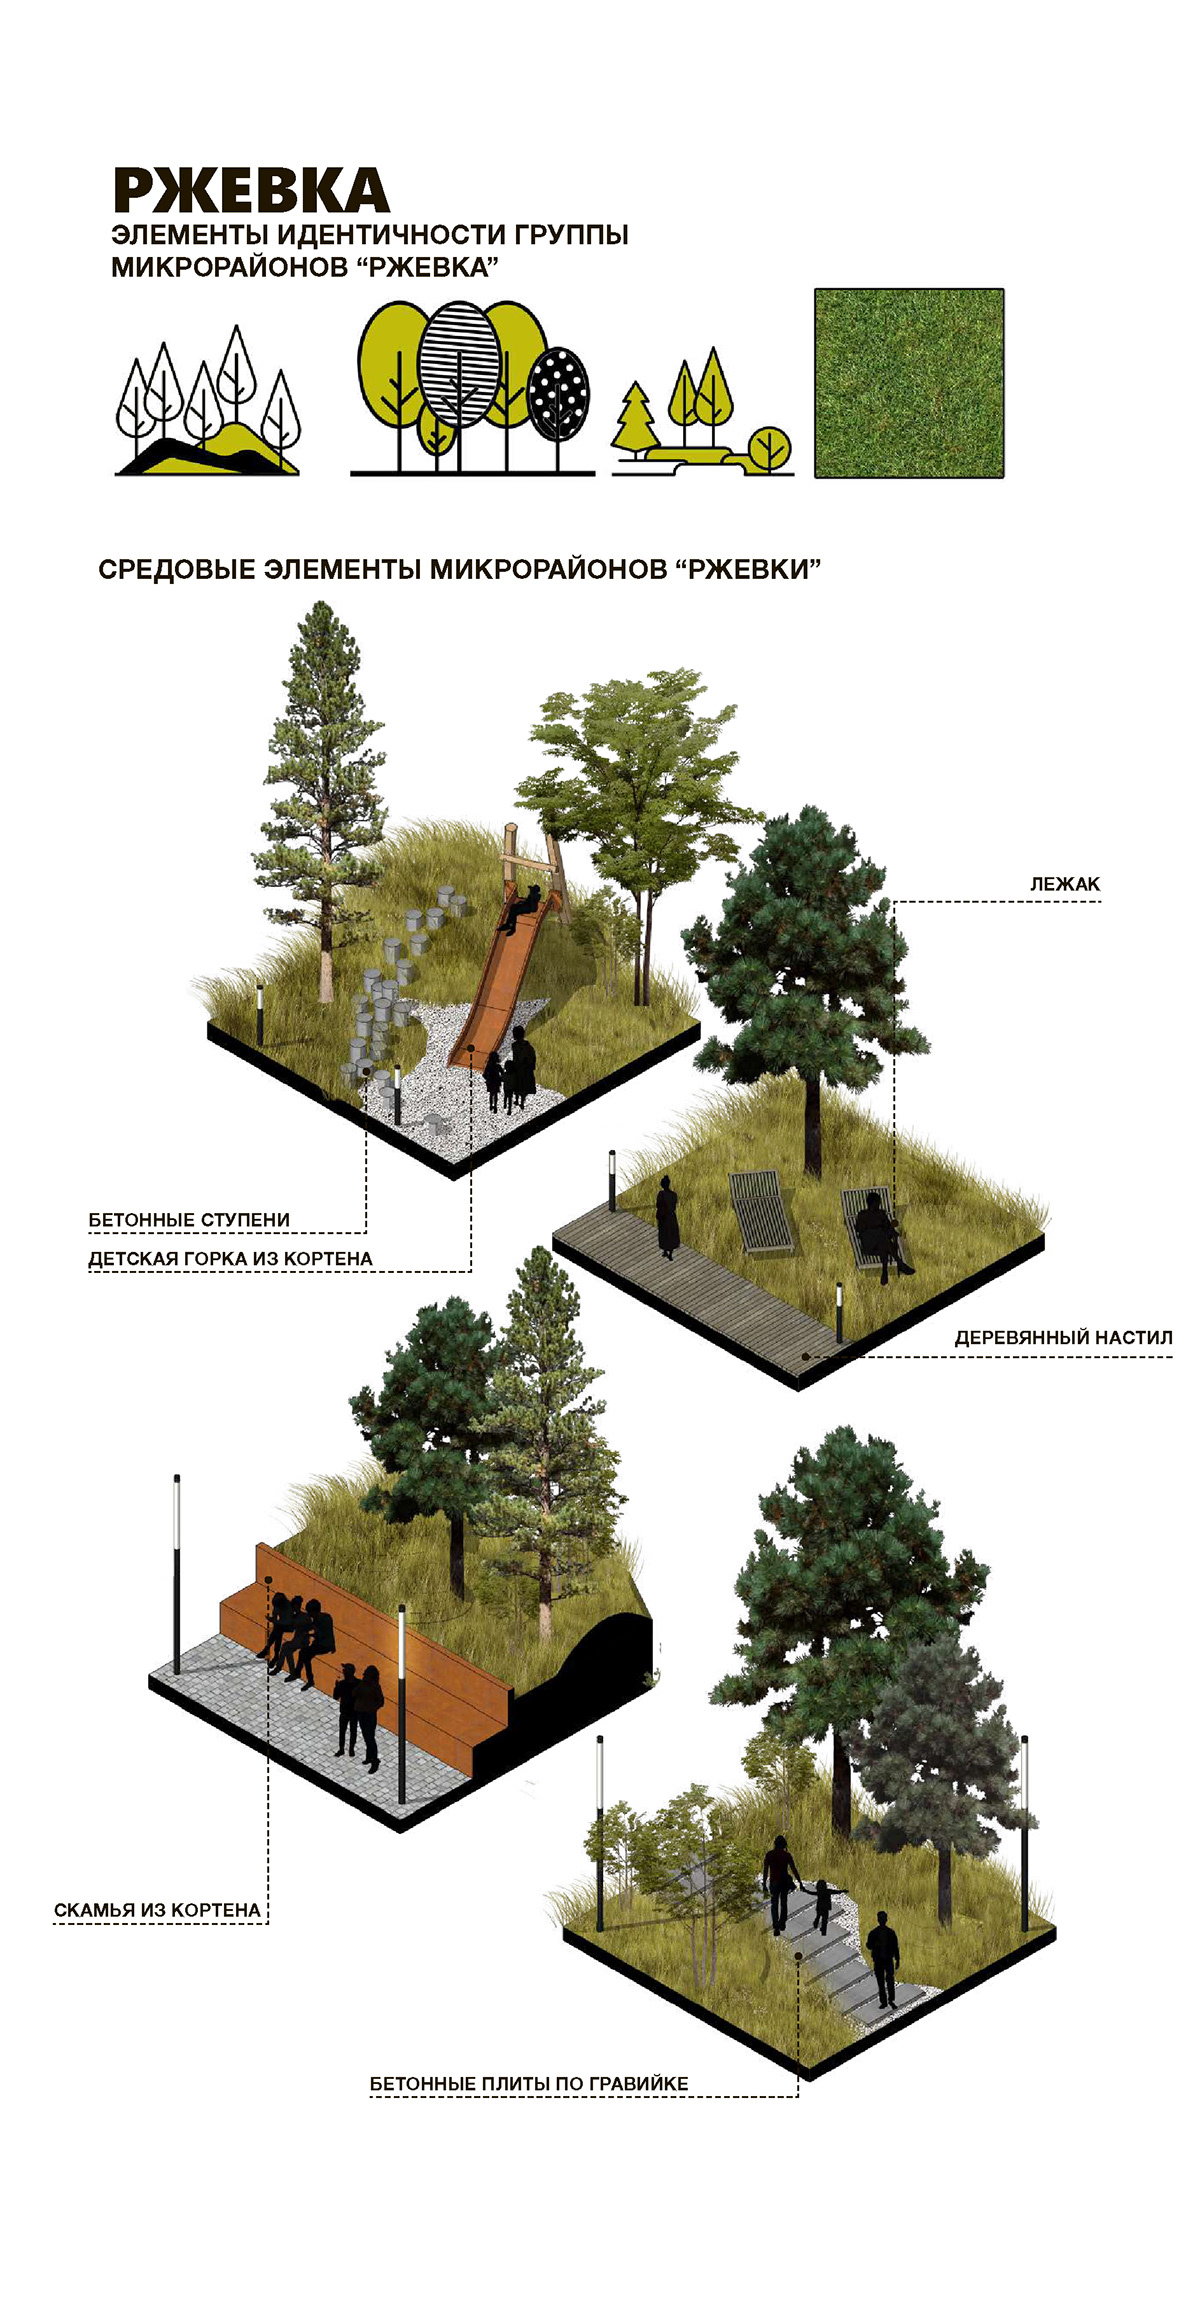 3d моделирование архитектура визуализация городская среда дизайн Ландшафтная архитектура ландшафтный дизайн малая архитектурная форма МАФ